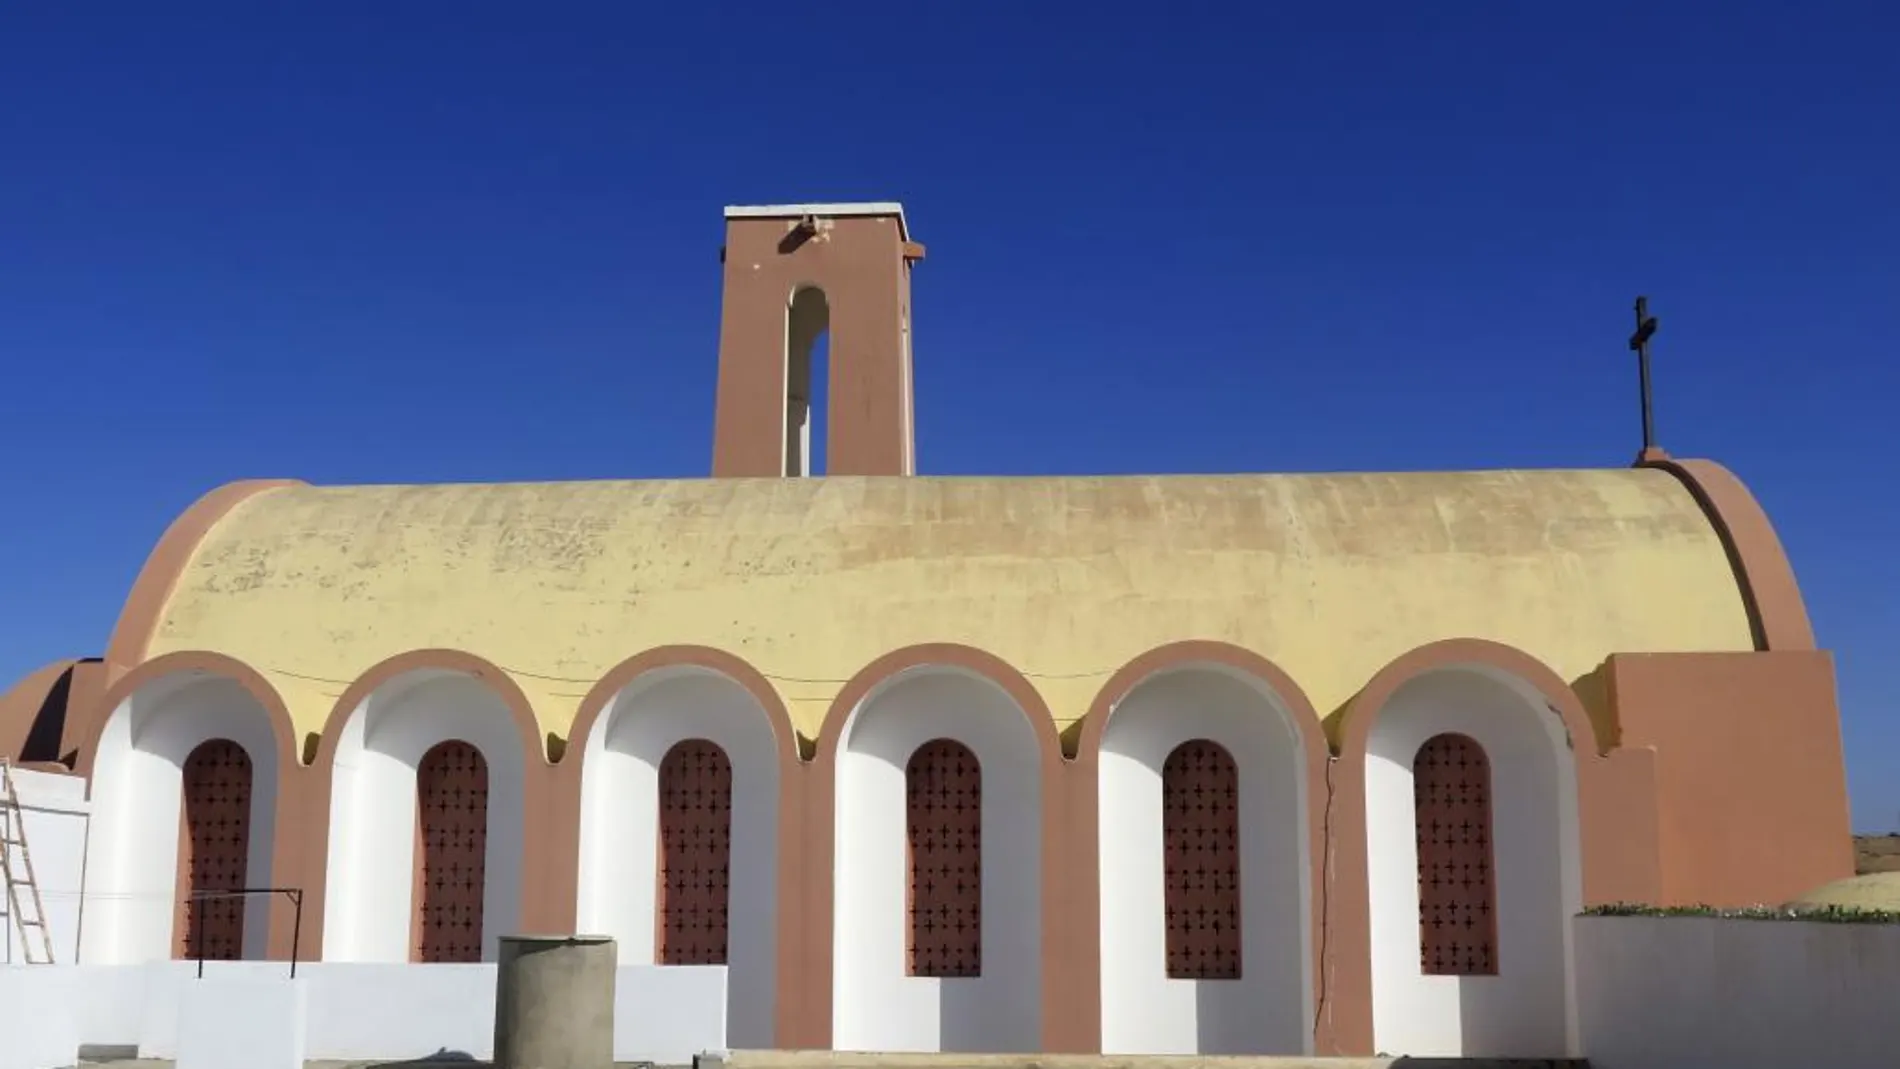 La ciudad de El Aaiún, capital del Sáhara Occidental, conserva un patrimonio arquitectónico construido en tiempos de la colonización española